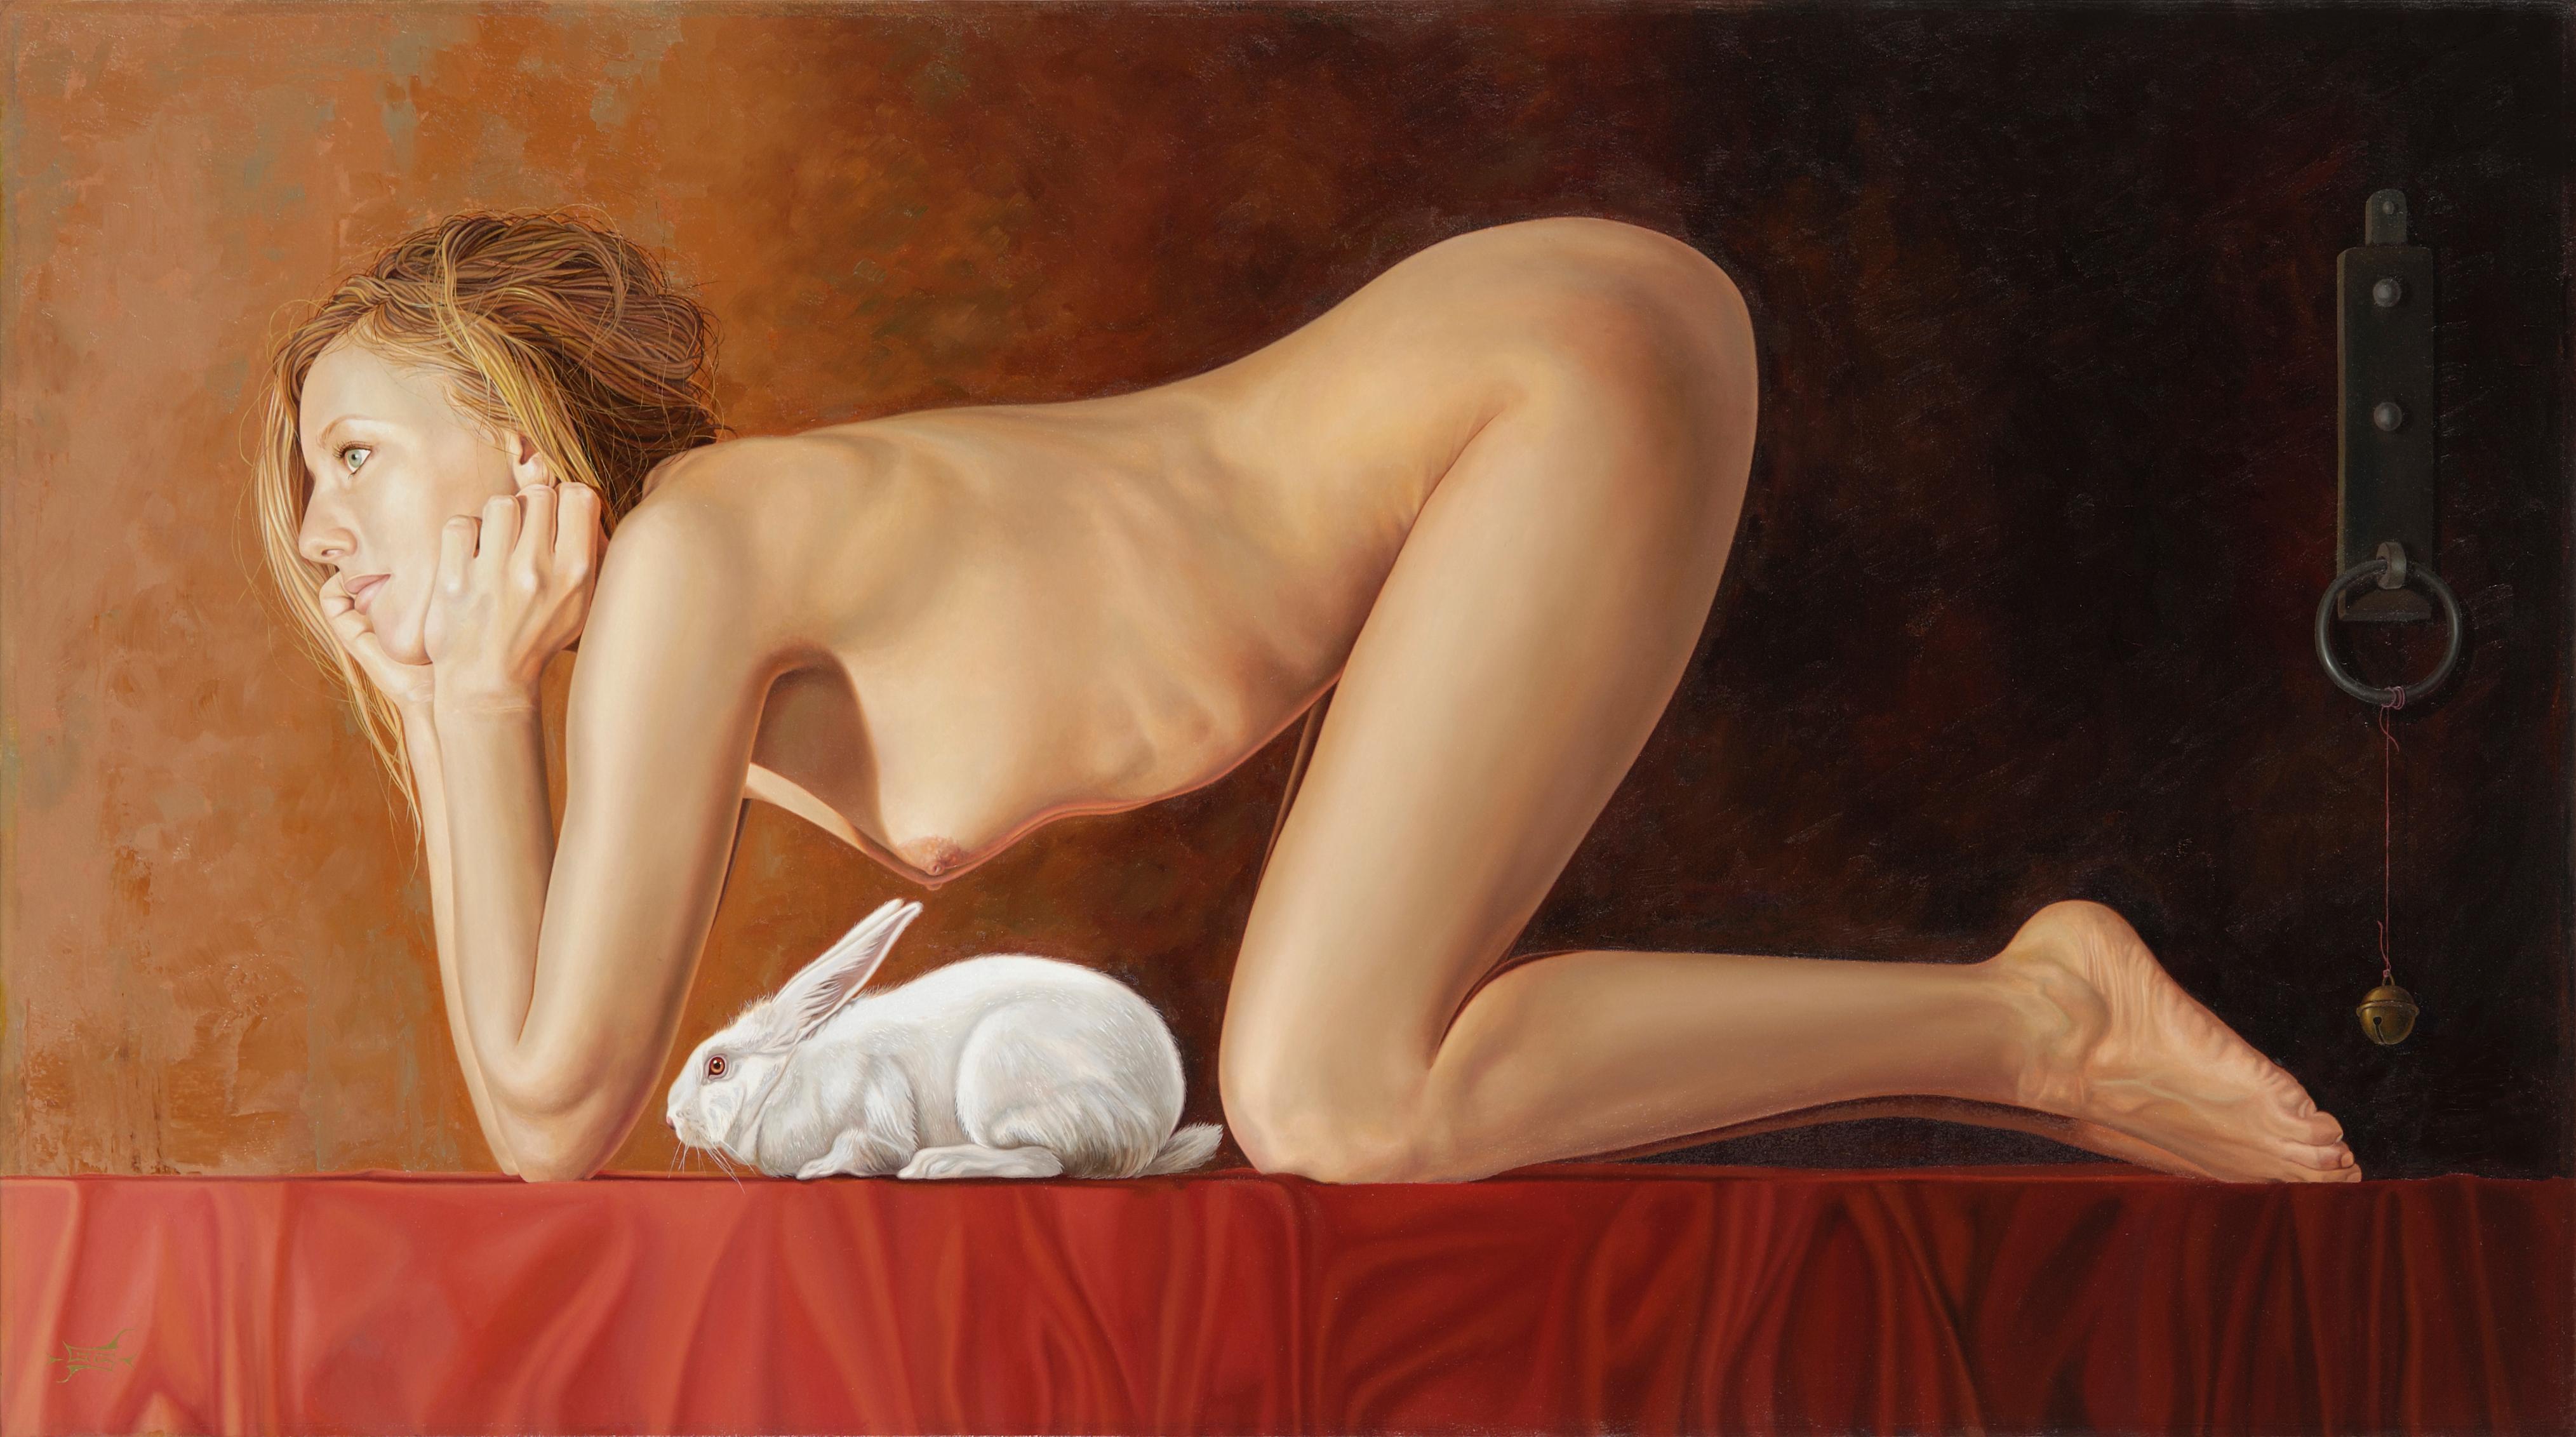 Gerard Schriemer Nude Painting – Kaninchen- Zeitgenössisches Gemälde eines nackten Mädchens mit weißem Kaninchen aus dem 21. Jahrhundert